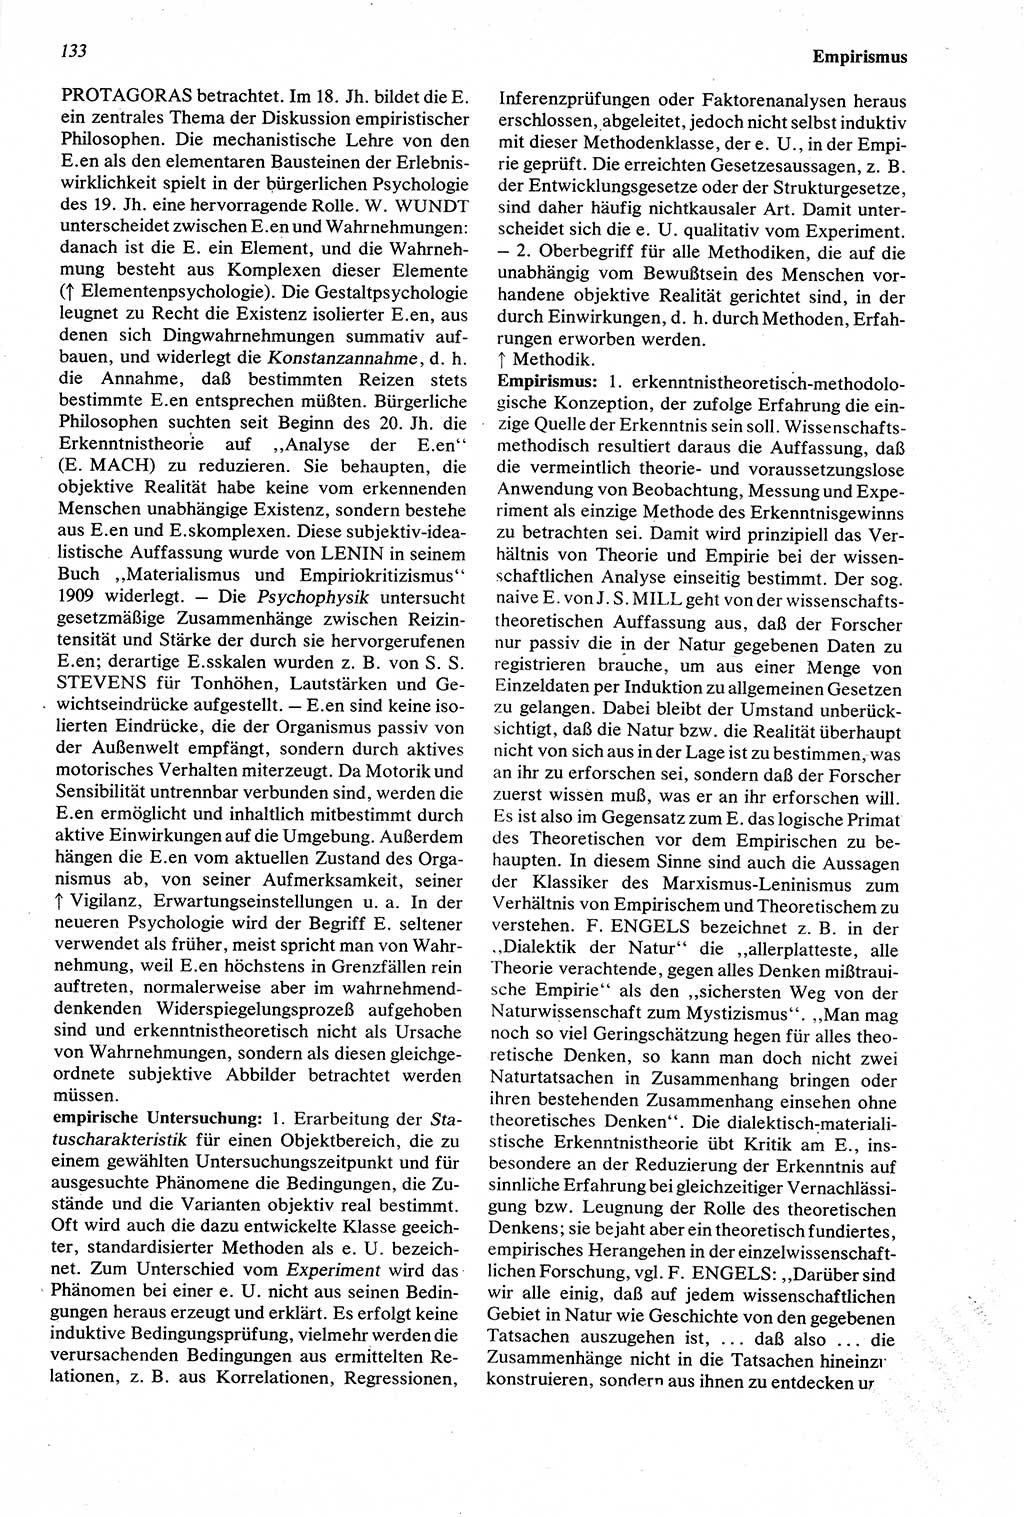 Wörterbuch der Psychologie [Deutsche Demokratische Republik (DDR)] 1976, Seite 133 (Wb. Psych. DDR 1976, S. 133)